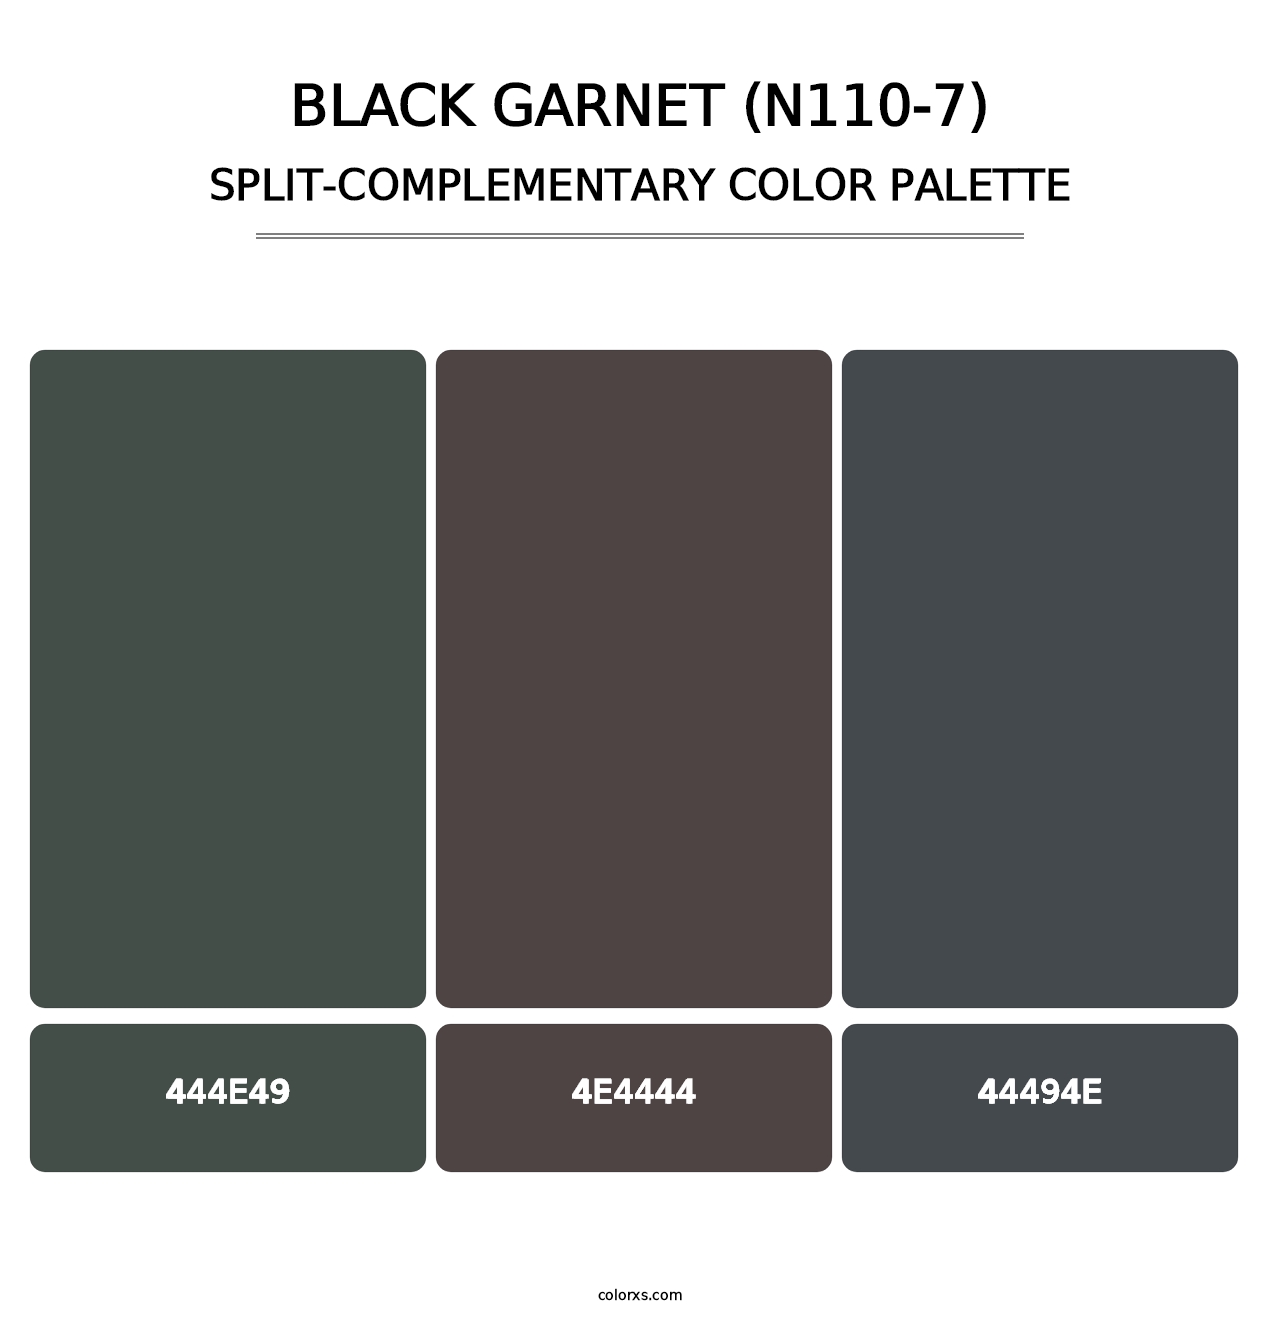 Black Garnet (N110-7) - Split-Complementary Color Palette